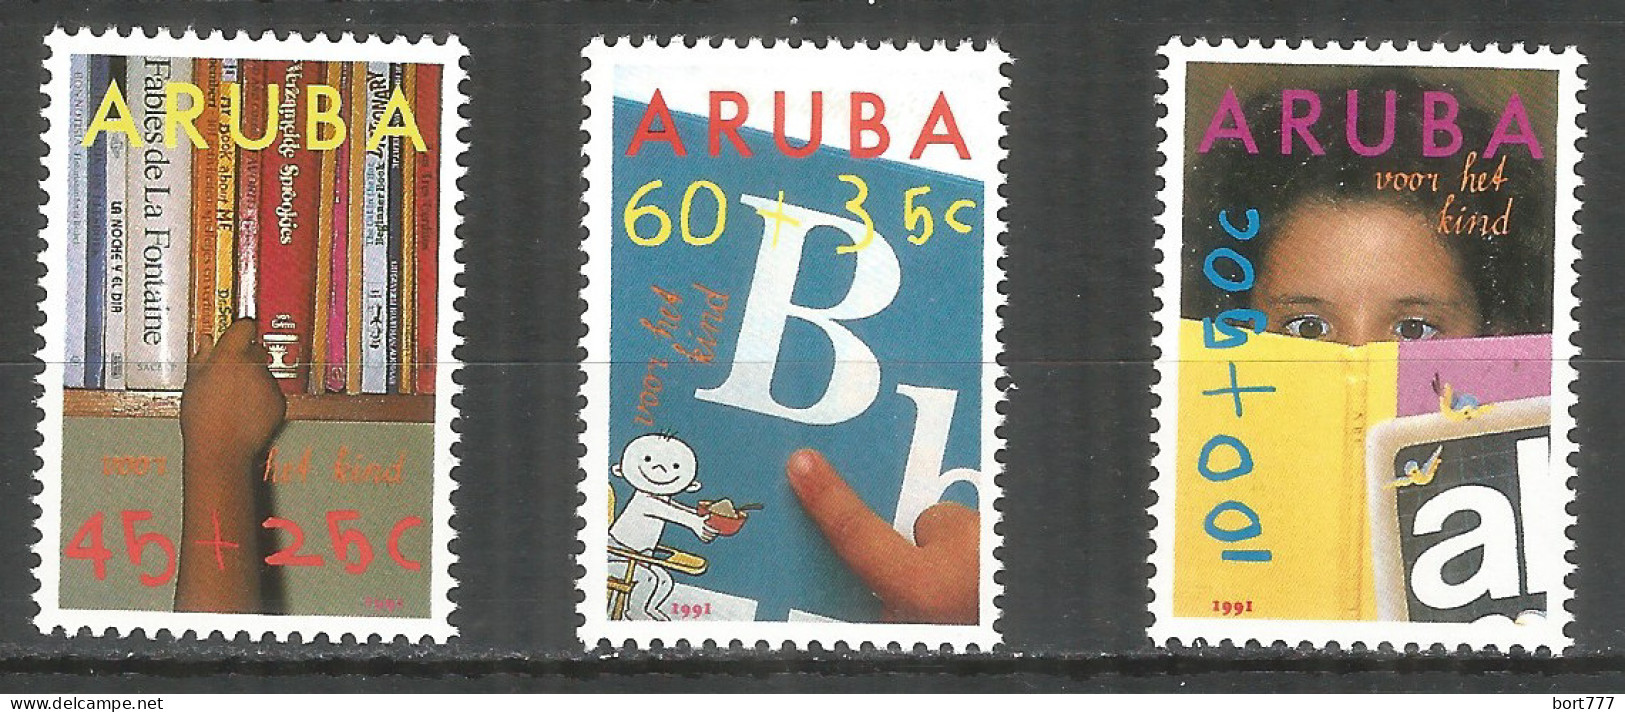 NETHERLANDS ARUBA 1991 Year , Mint Stamps MNH (**)   Michel# 97-99 - Curacao, Netherlands Antilles, Aruba